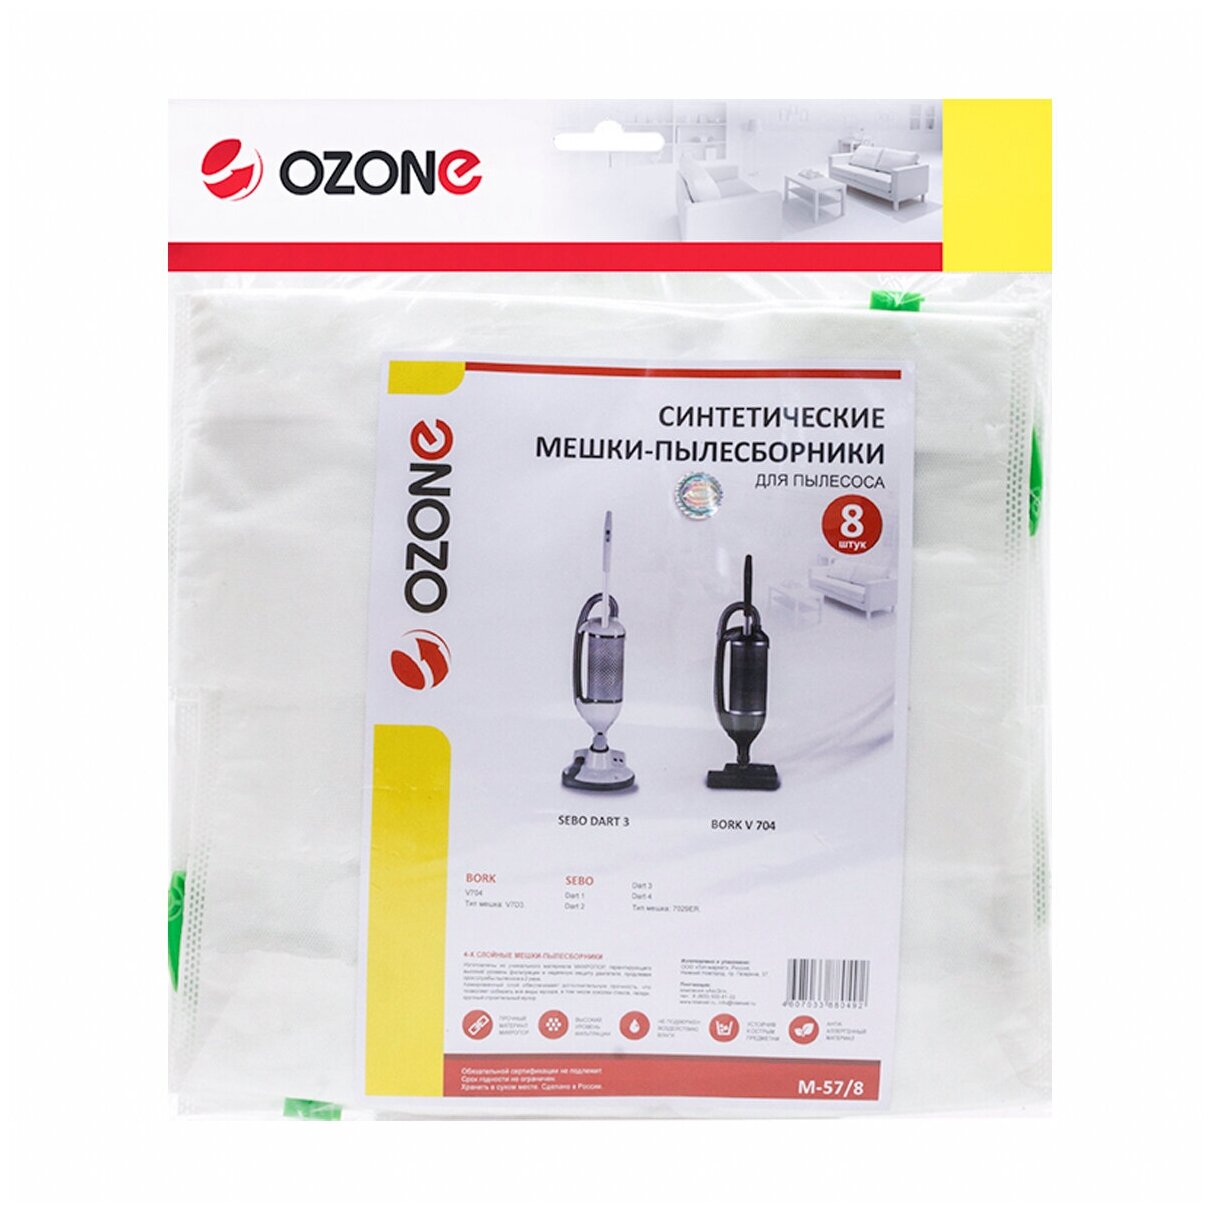 Многослойные синтетические мешки пылесборники Ozone M-57 для пылесоса BORK V704 8 